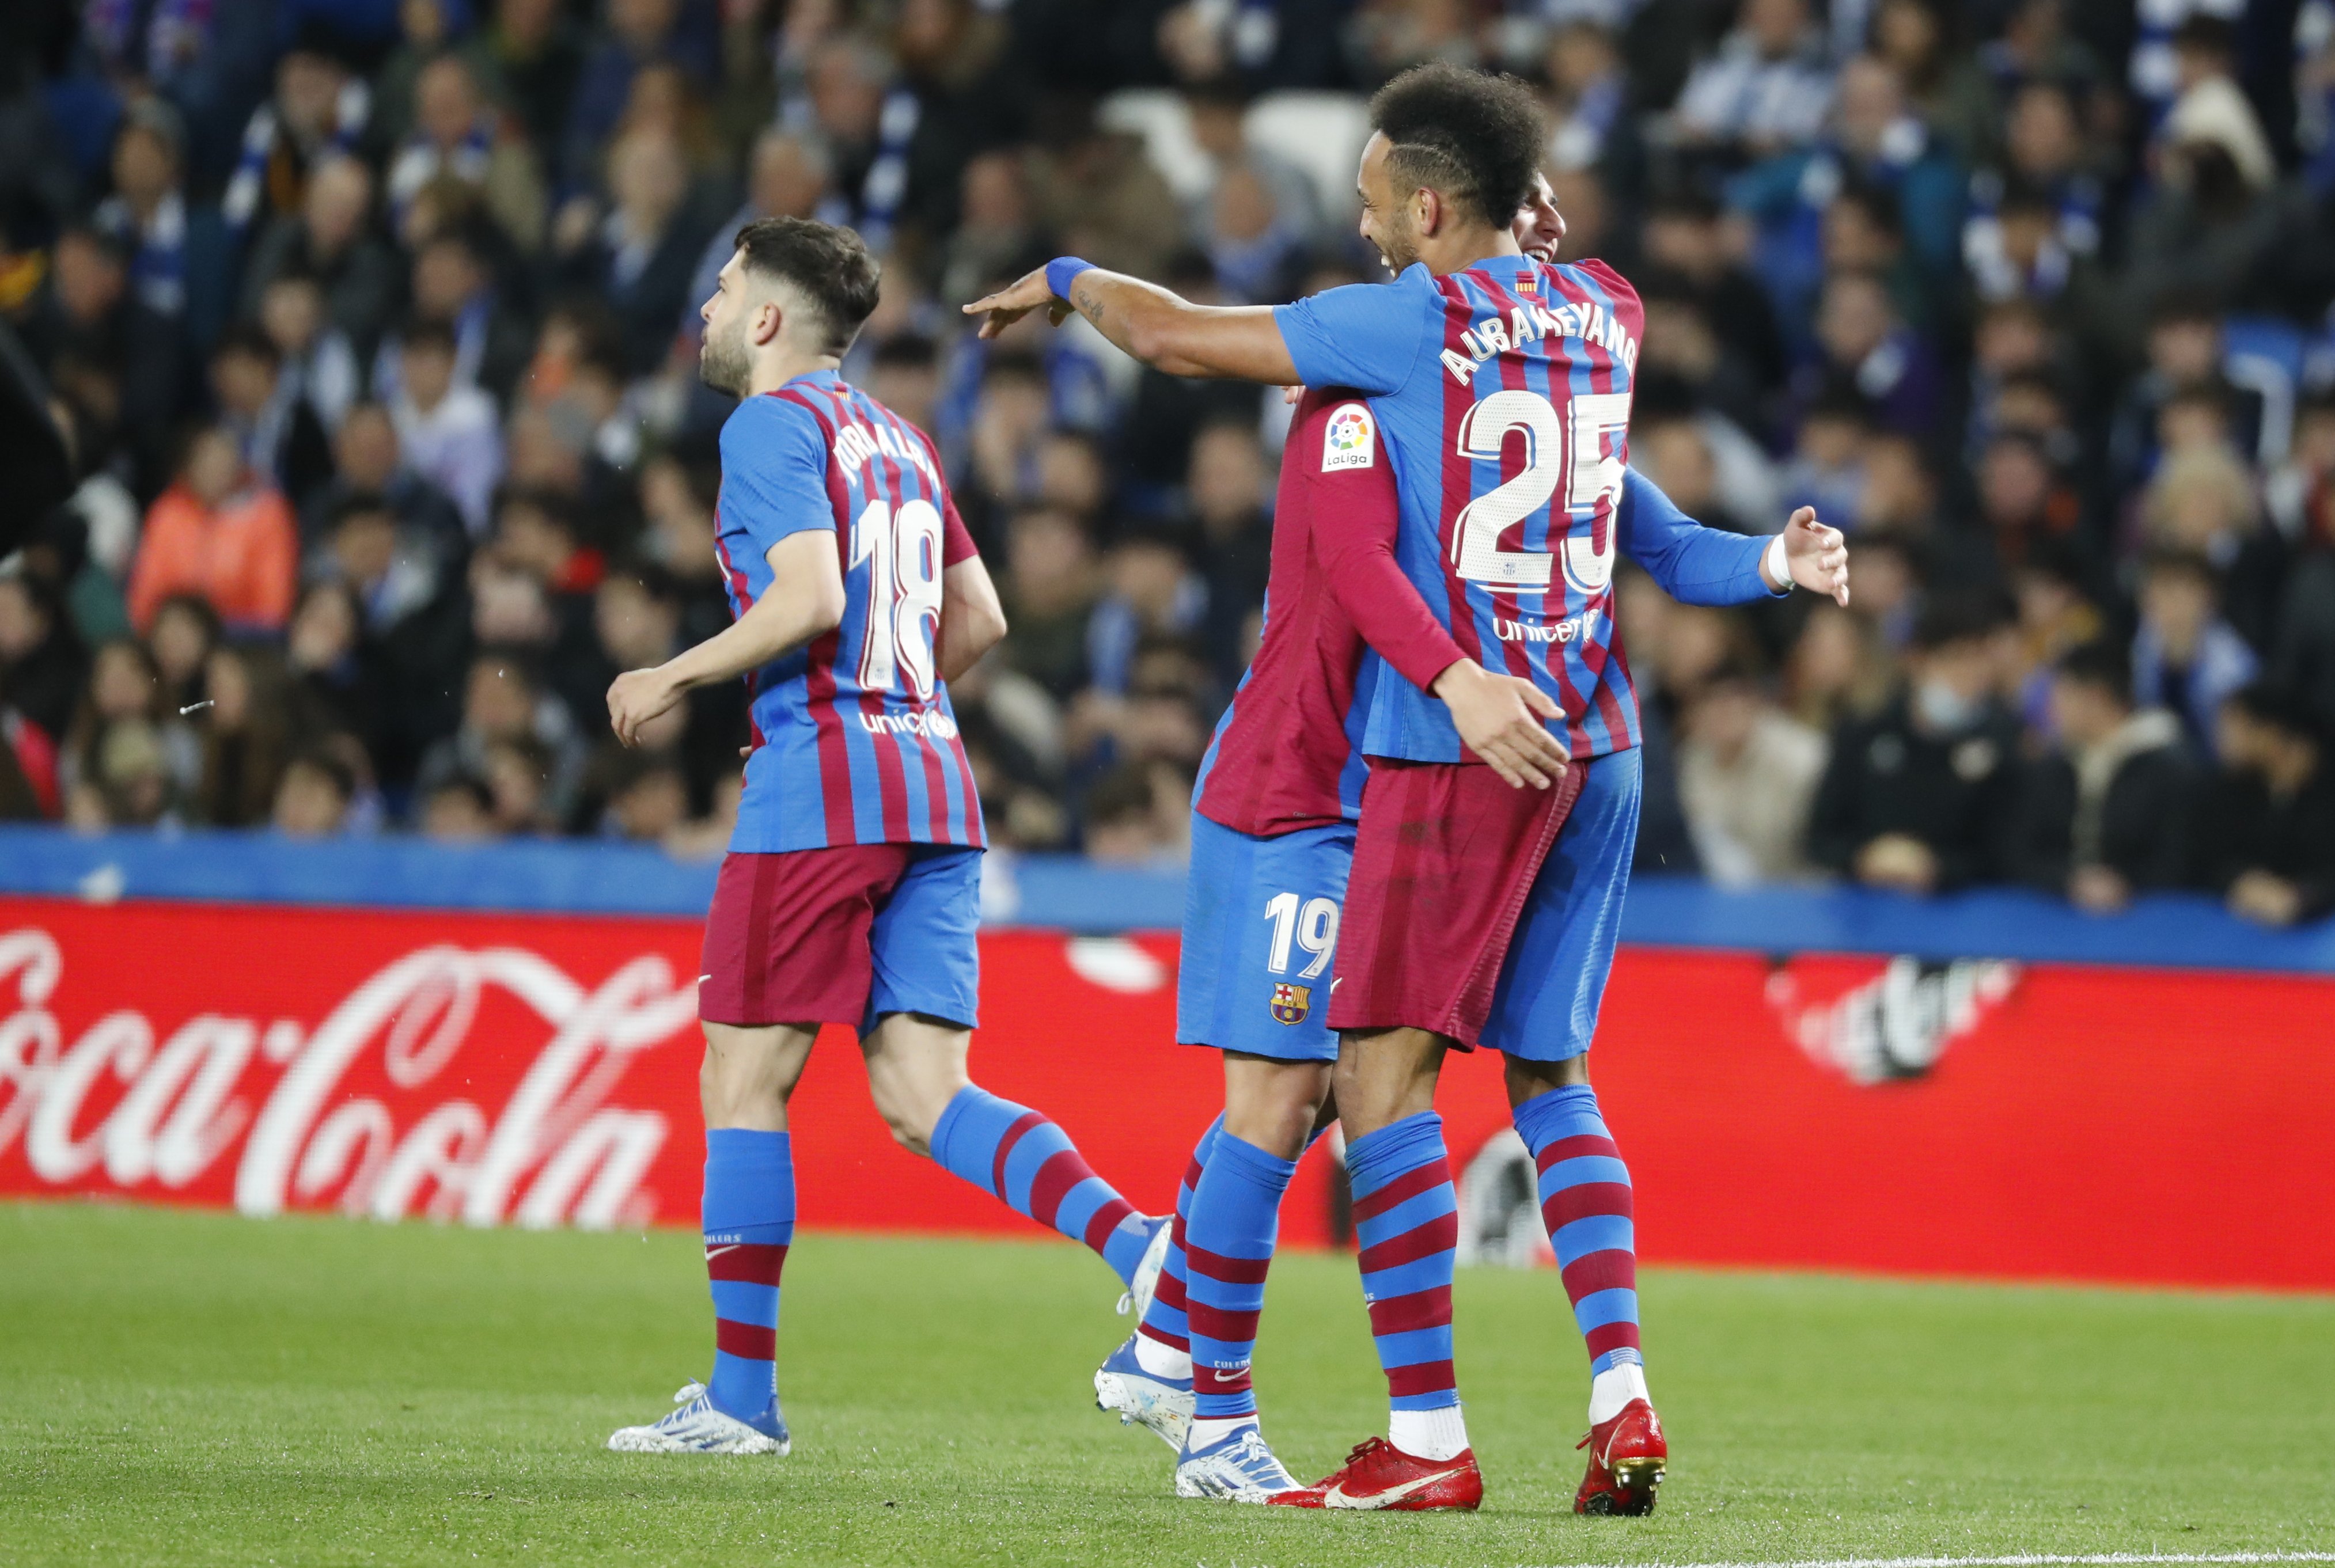 El Barça resiste contra la Real Sociedad y se aferra a la Liga (0-1)